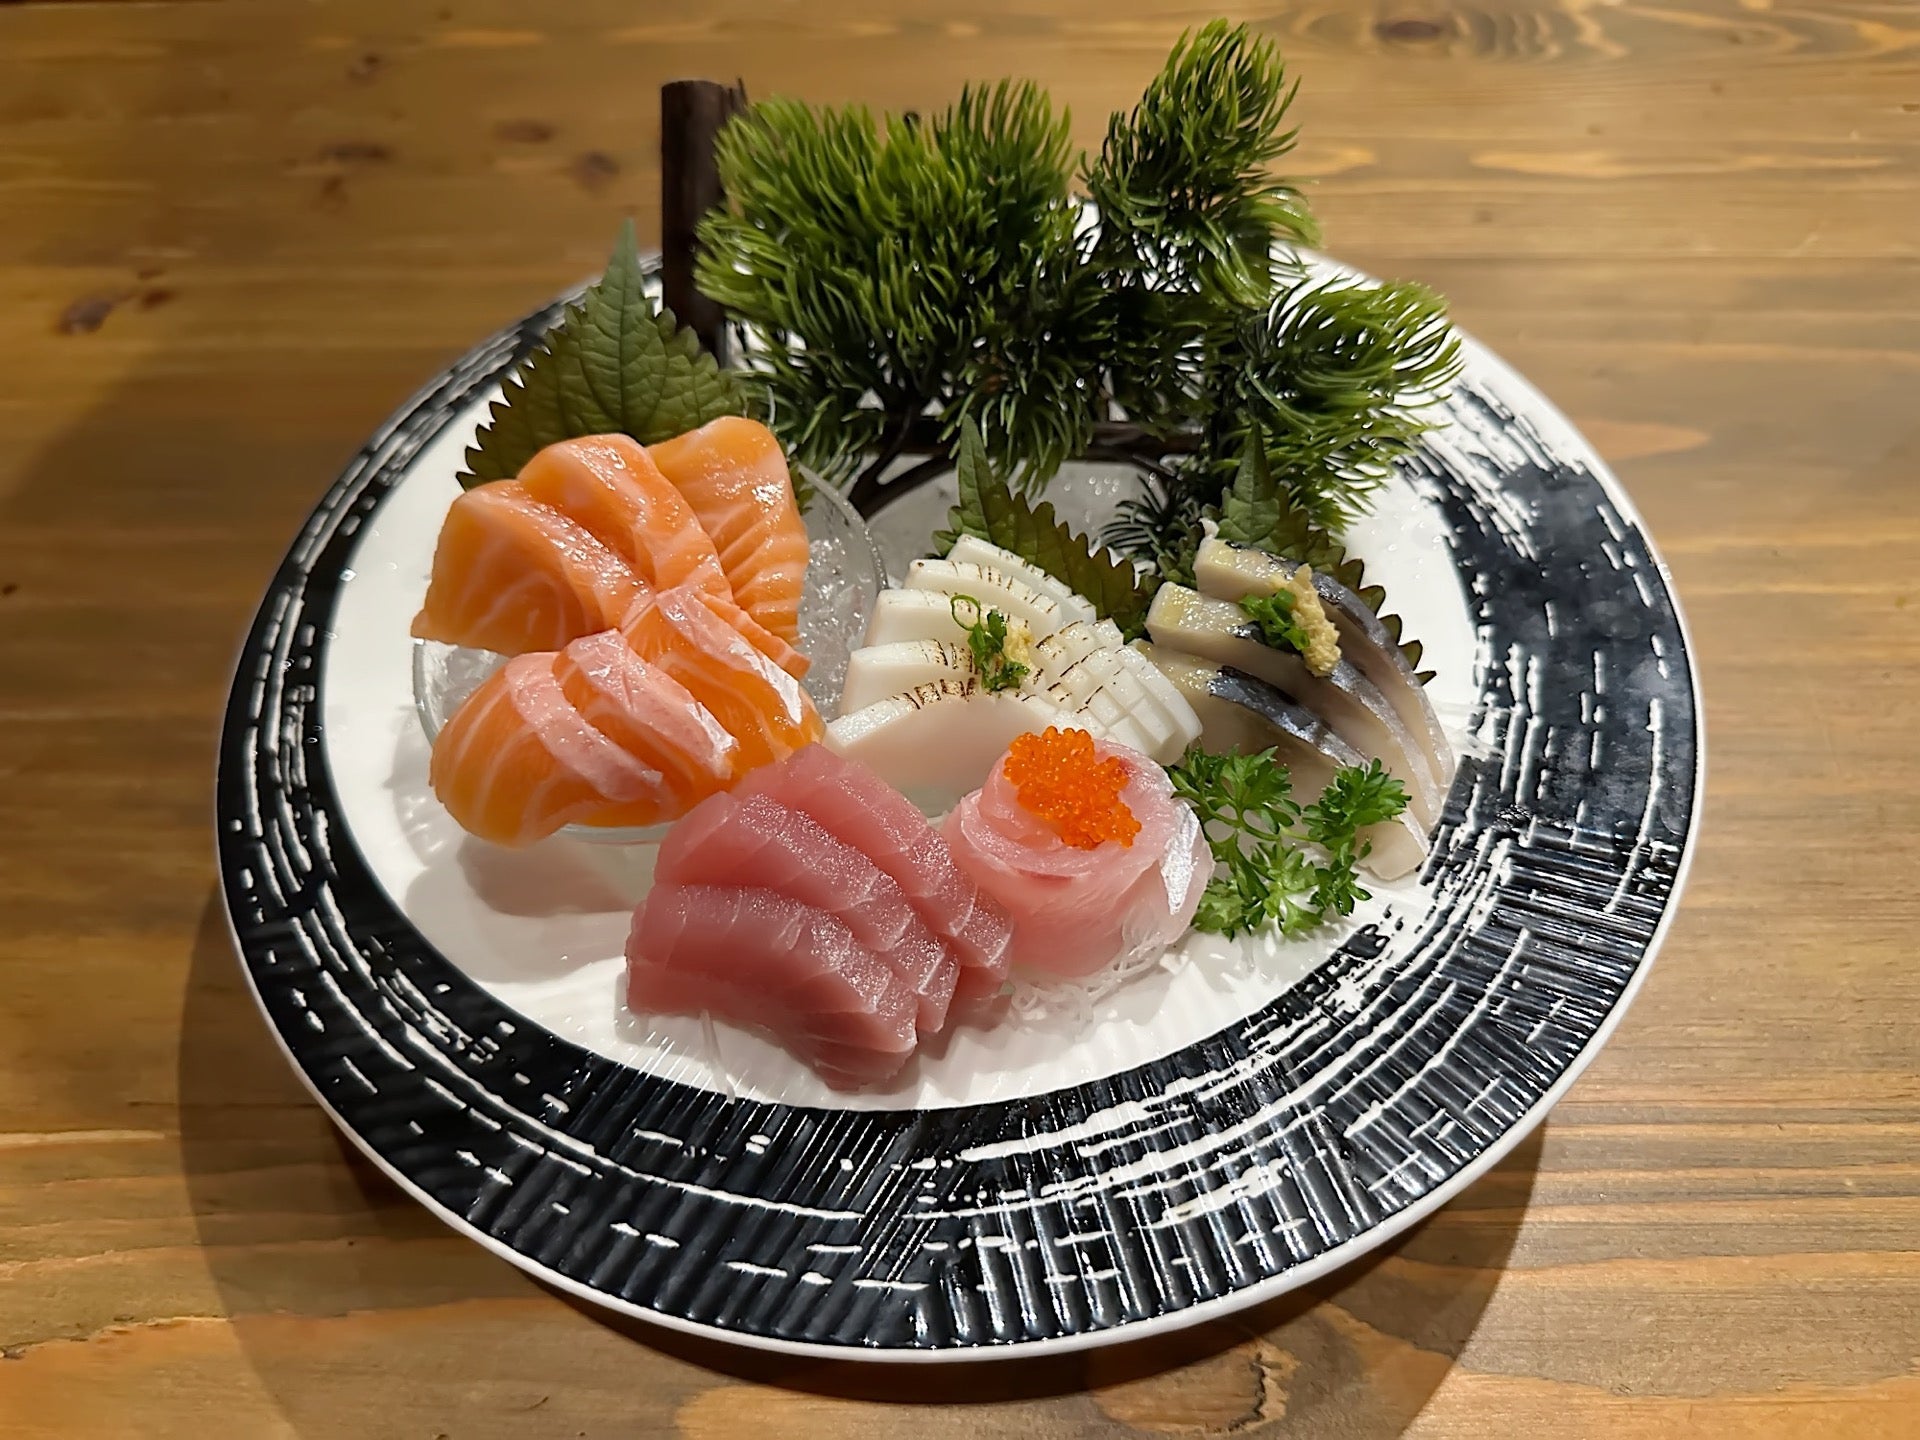 Sushi Hokkaido Sachi